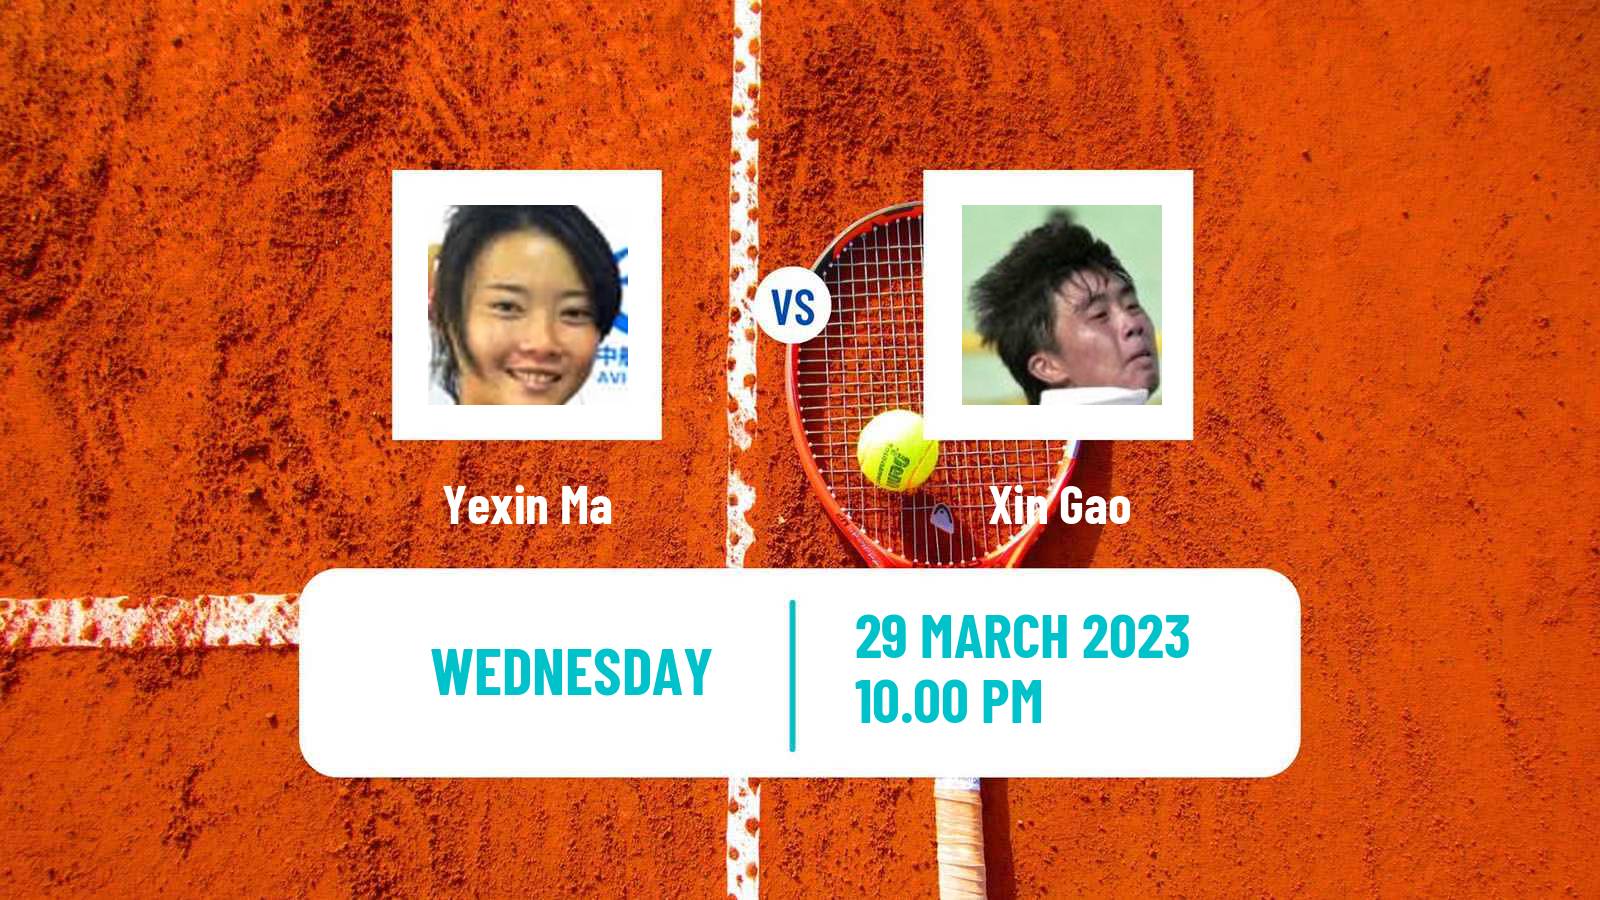 Tennis ITF Tournaments Yexin Ma - Xin Gao